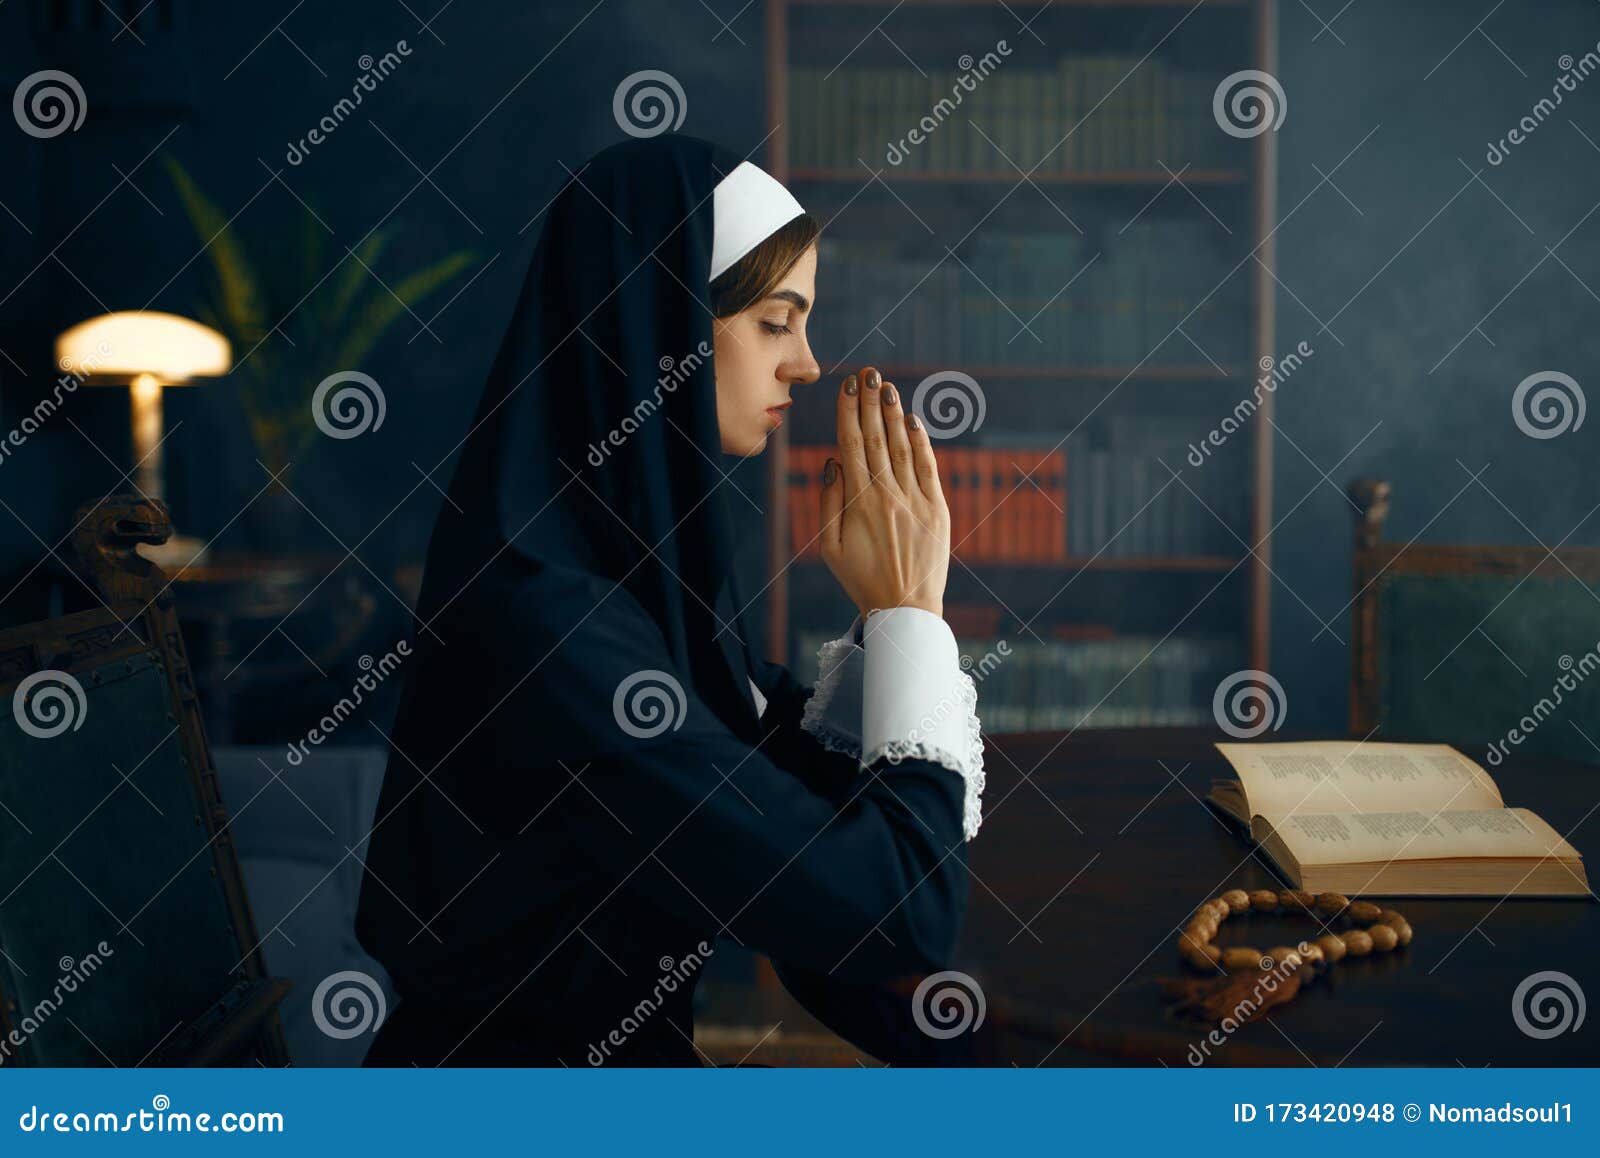 小修女在祈祷中越过双臂 库存图片. 图片 包括有 人们, 祷告, 有吸引力的, 教会, 祈祷, 基督徒 - 172001909